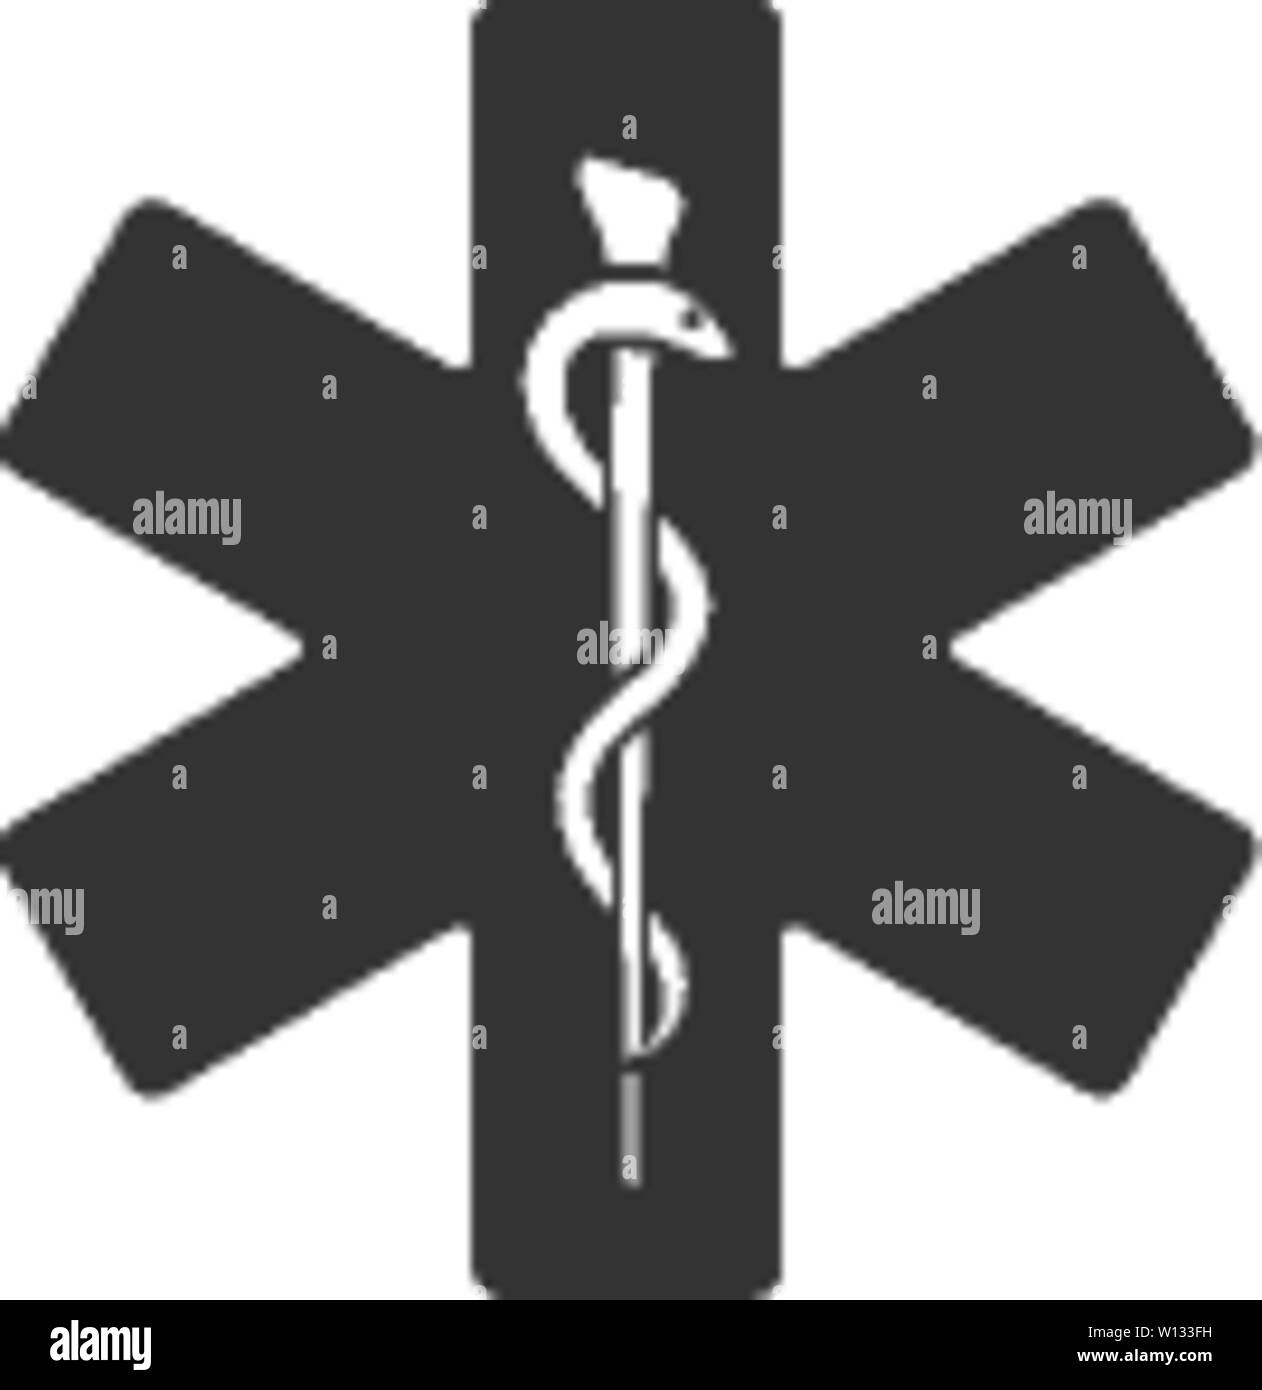 Medical symbol icon in single grey color. Stock Vector